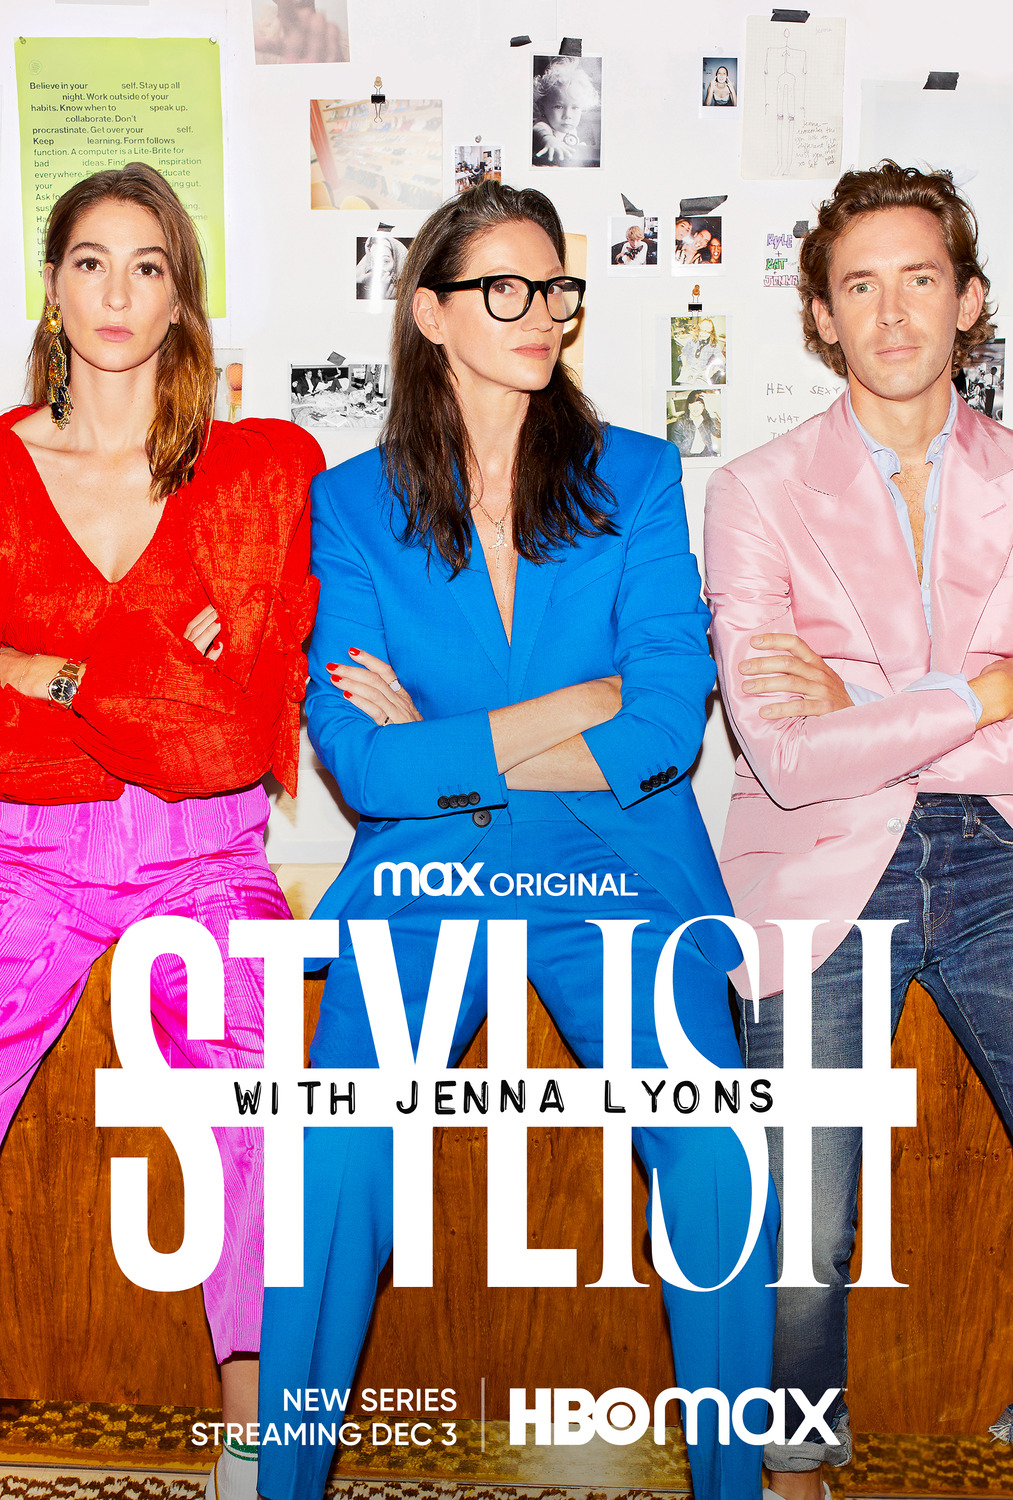 Extra Large TV Poster Image for Stylish with Jenna Lyons 